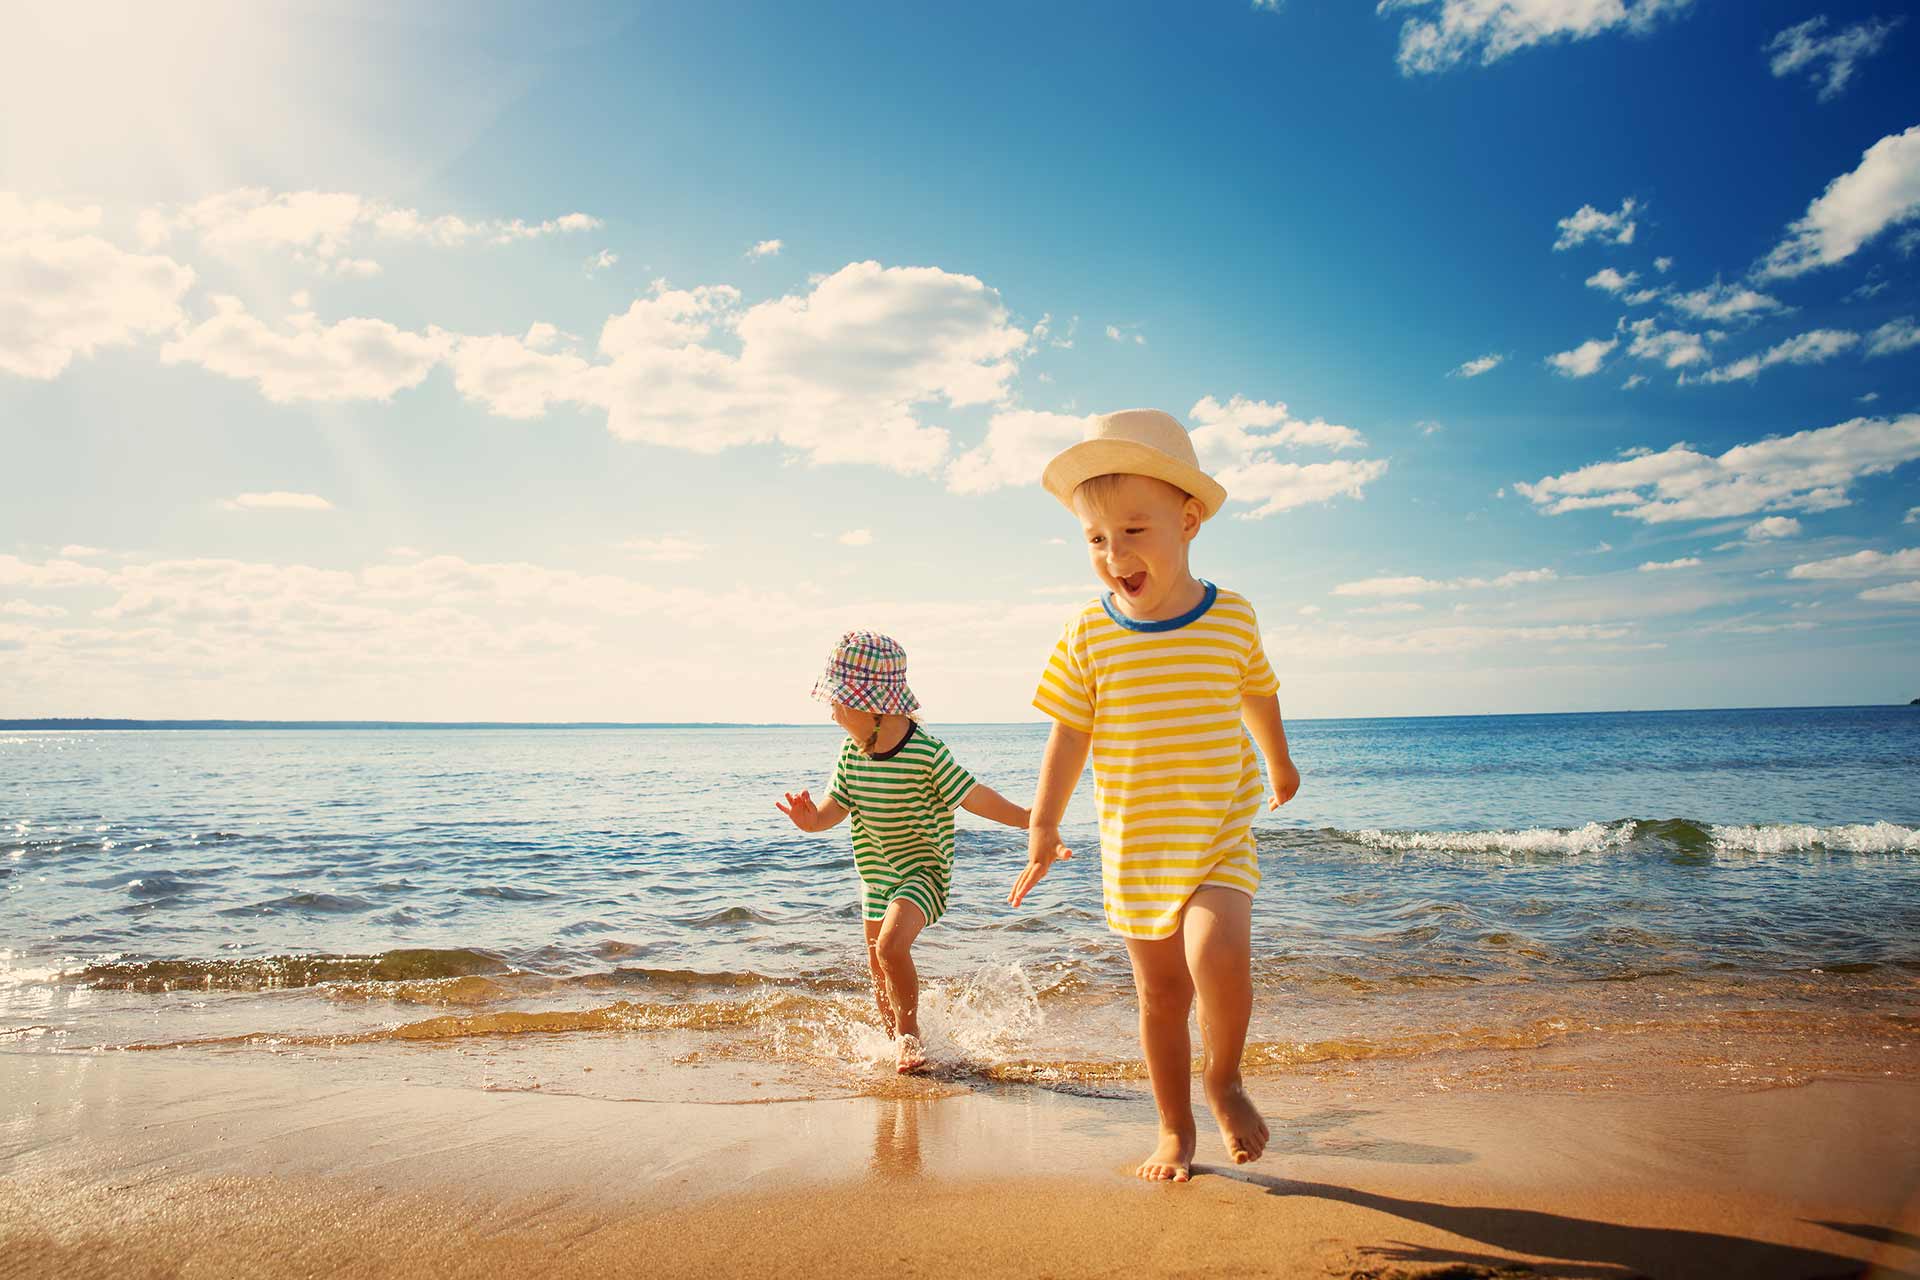 Sonnenschutz mit hohem Lichtschutzfaktor für Kinder, die am Strand spielen